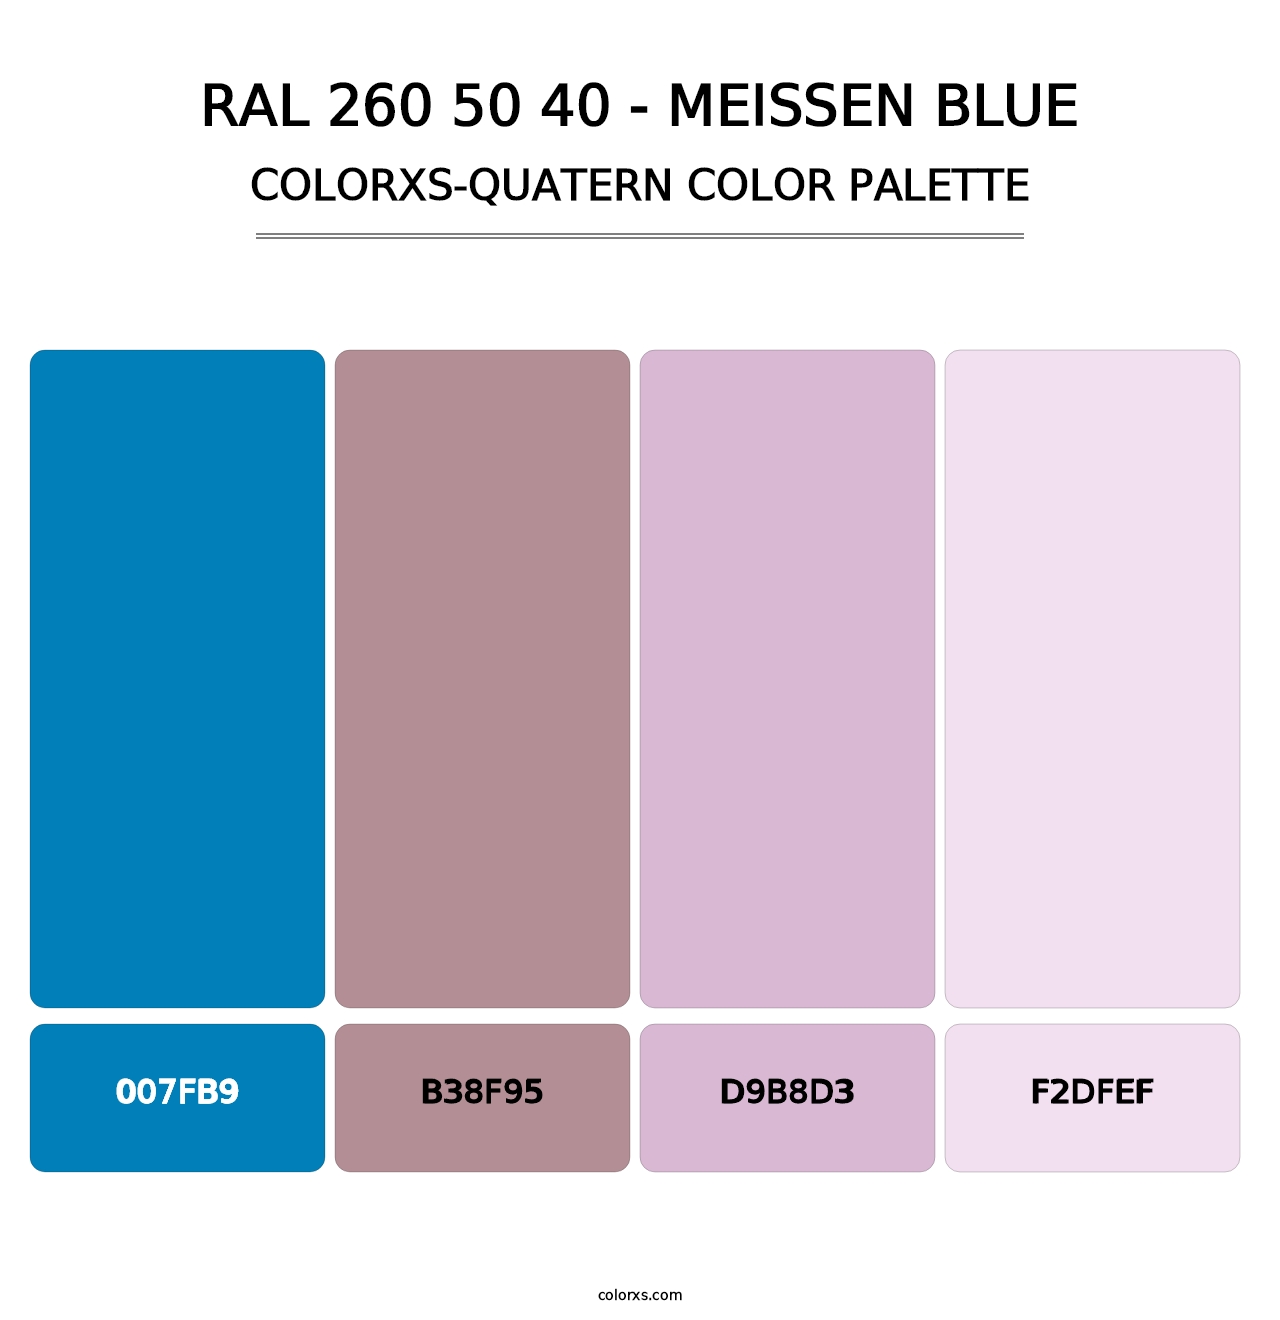 RAL 260 50 40 - Meissen Blue - Colorxs Quatern Palette